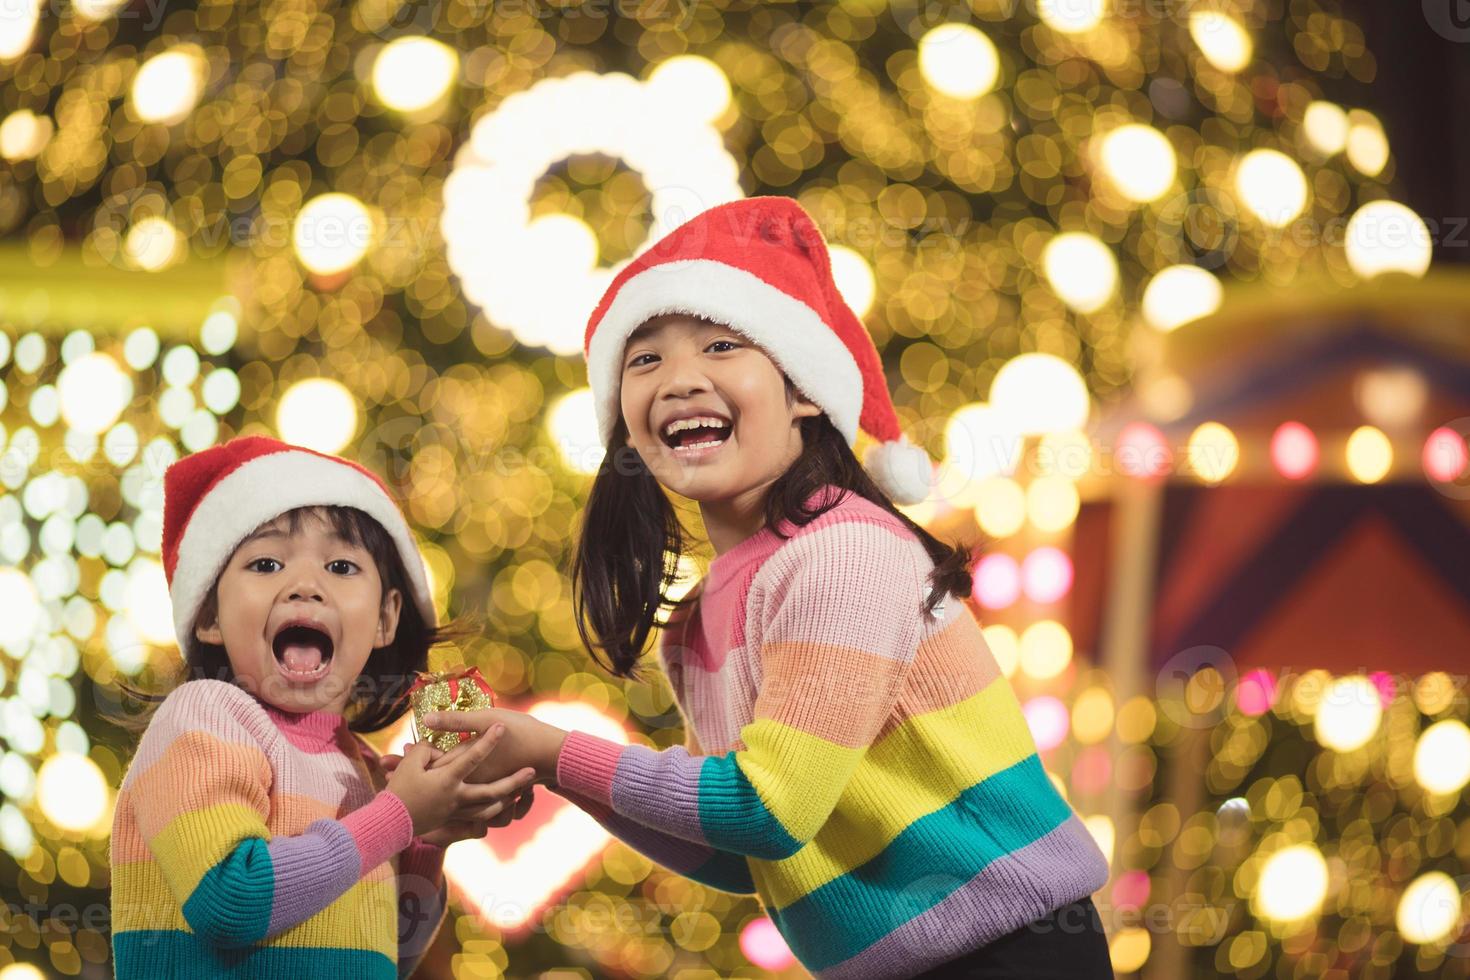 feliz navidad niños felices con un regalo mágico en casa cerca del árbol de navidad foto